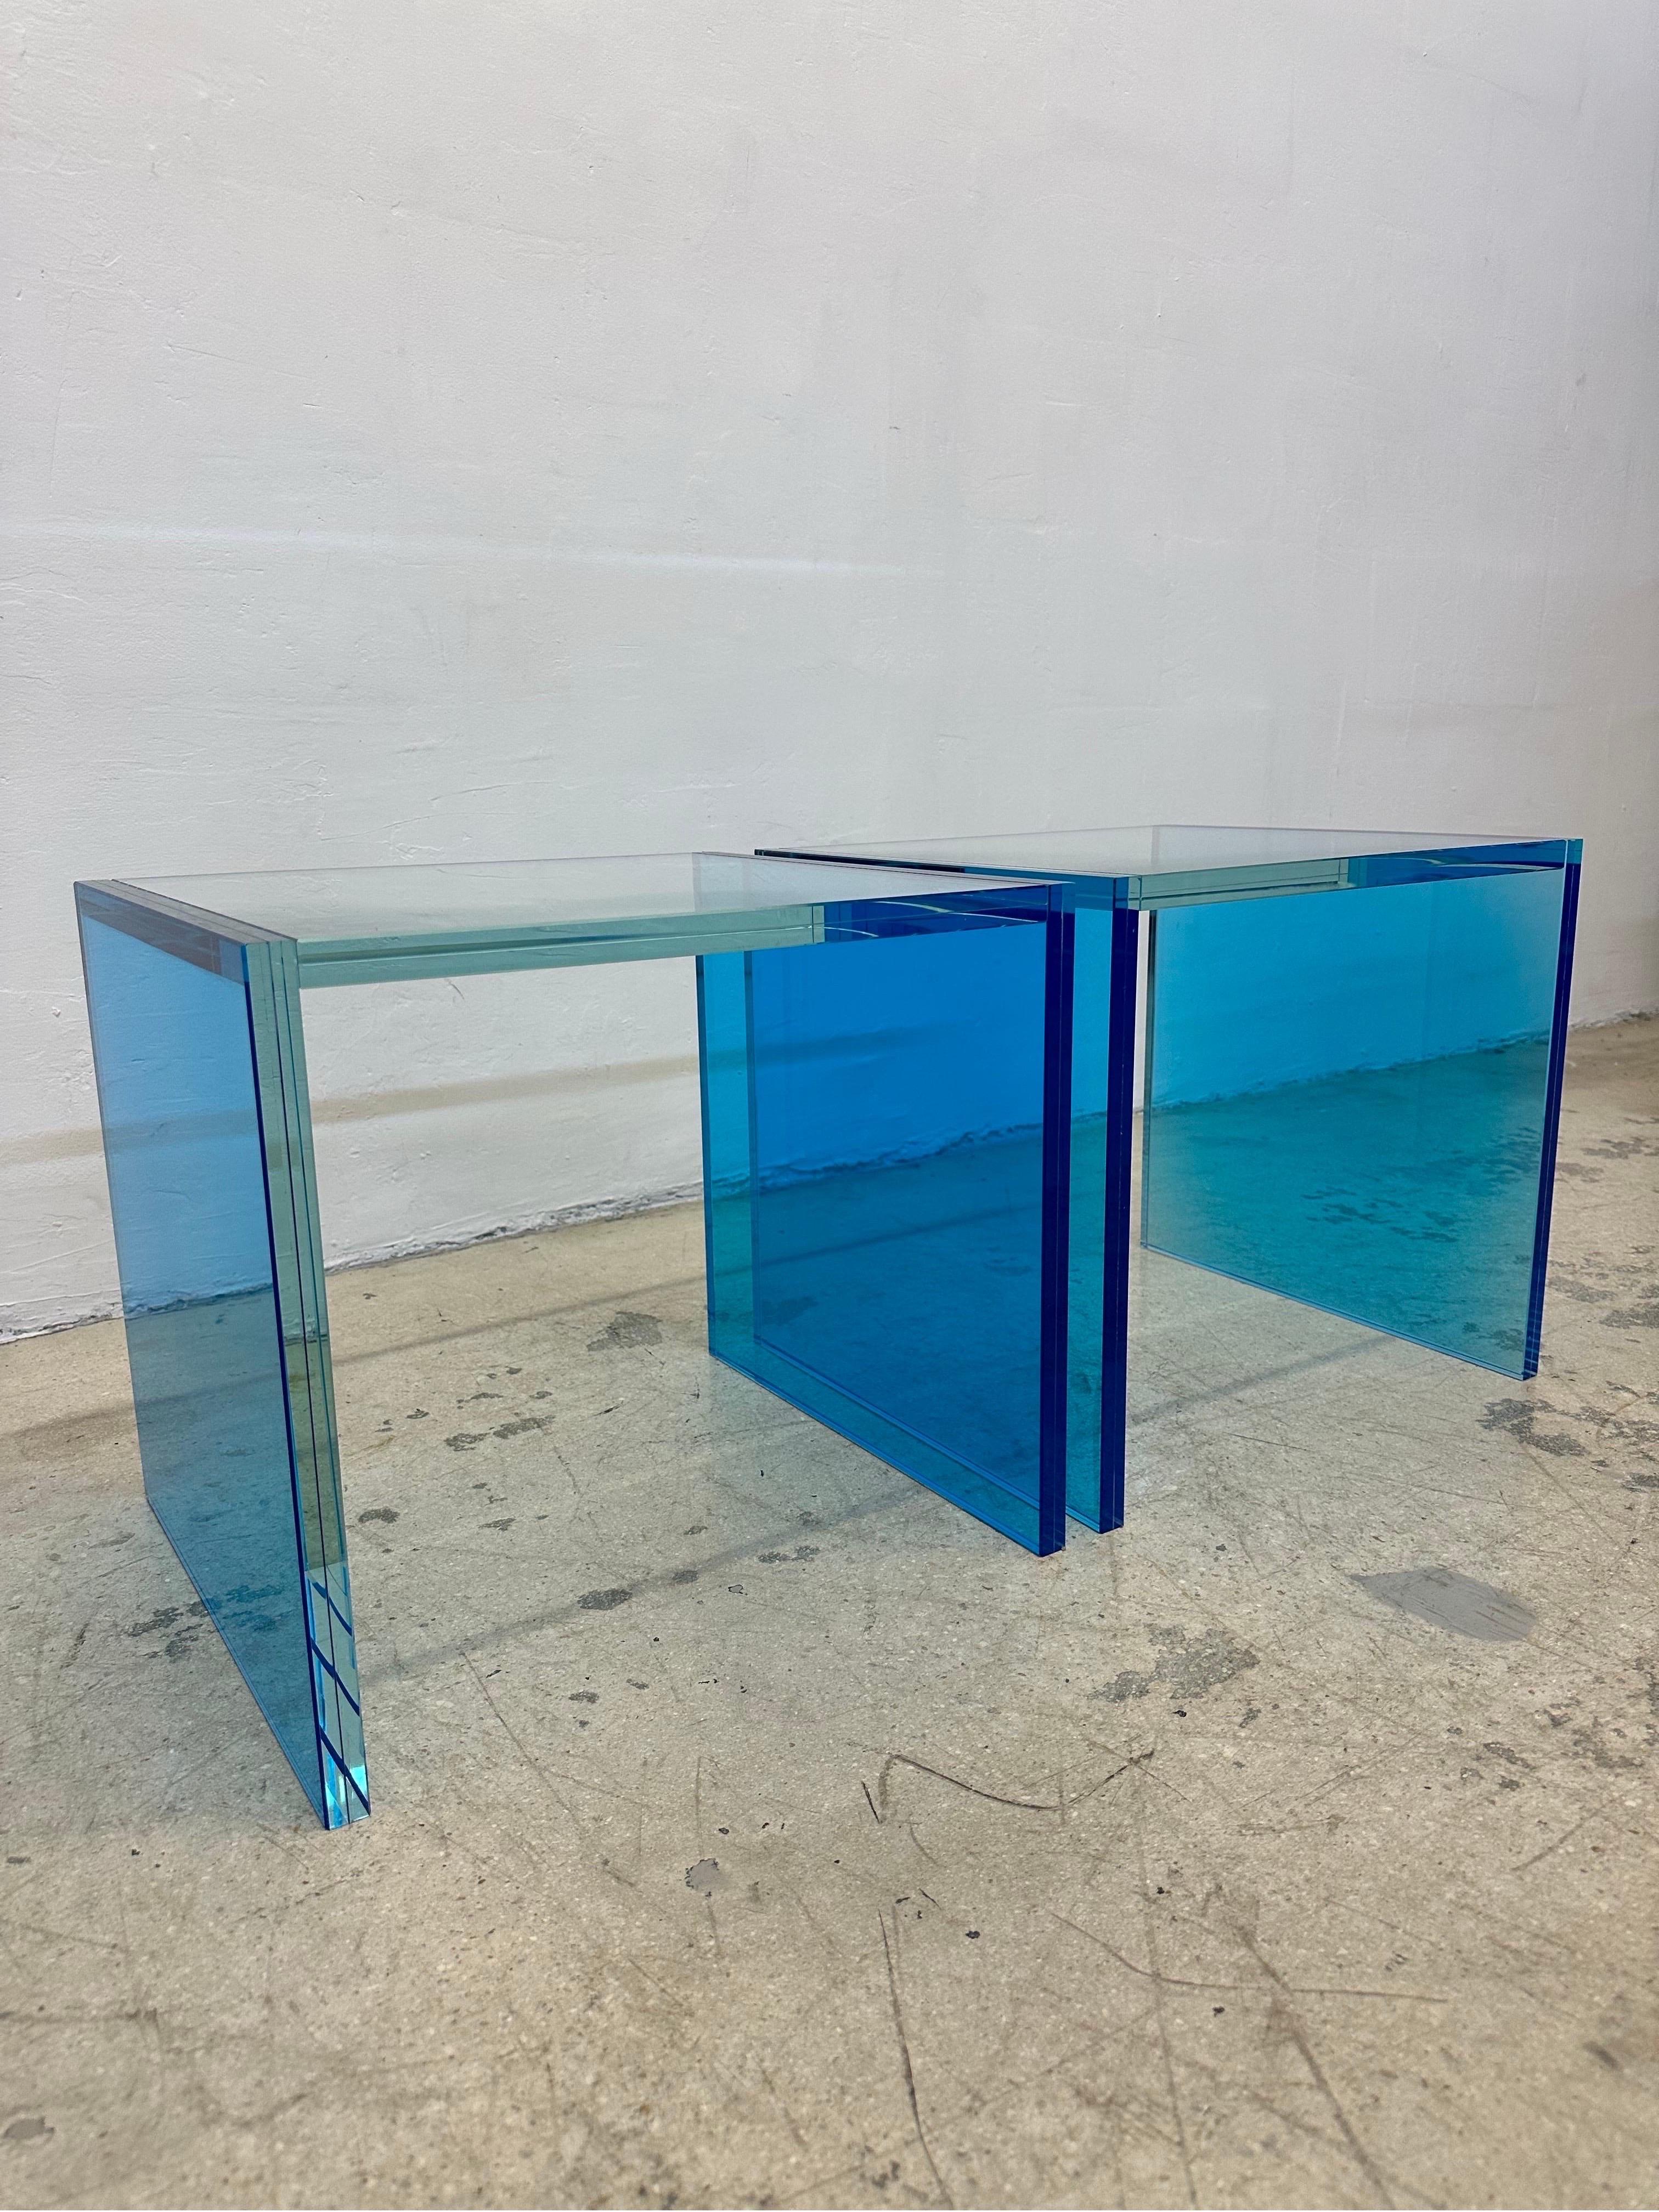 Cette paire de tables d'appoint en verre bleu, créée par le célèbre cabinet d'architectes verriers Santambrogio Milano, a été conçue pour la Collection Saintes et présentée pour la première fois au Salone de Mobile, en 2022.

Au passage de la